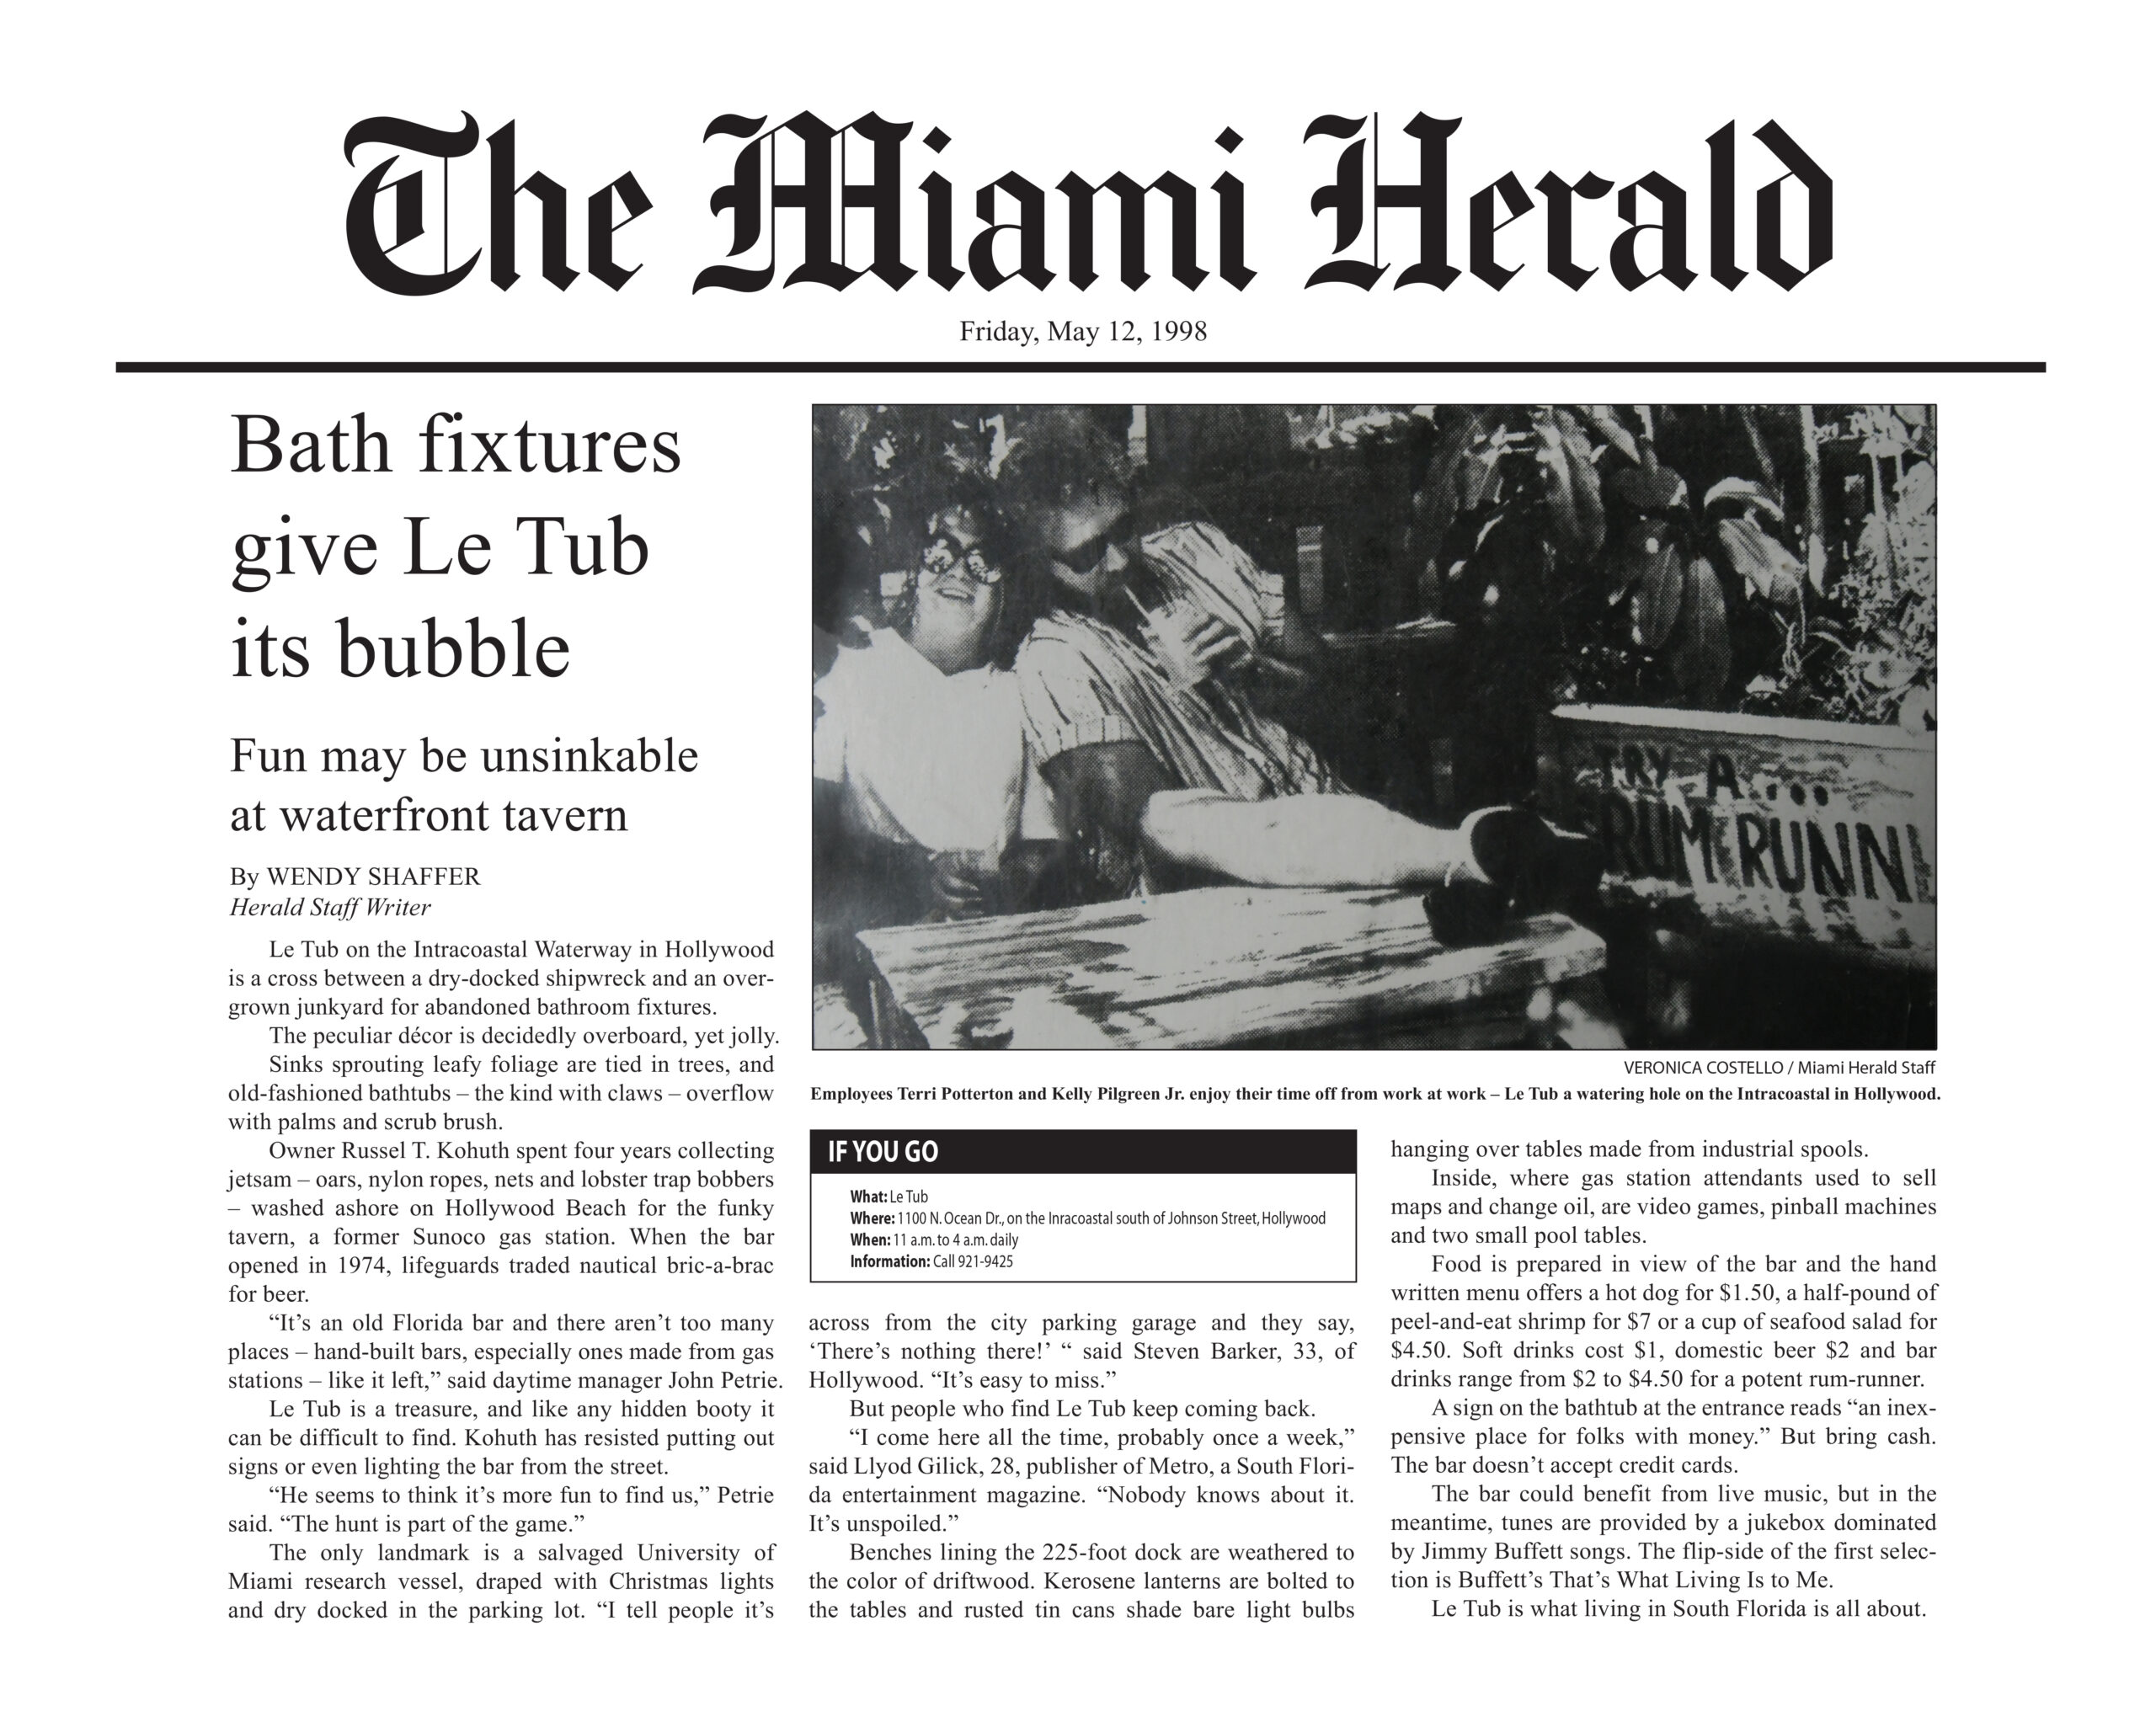 Le Tub - Miami Herald